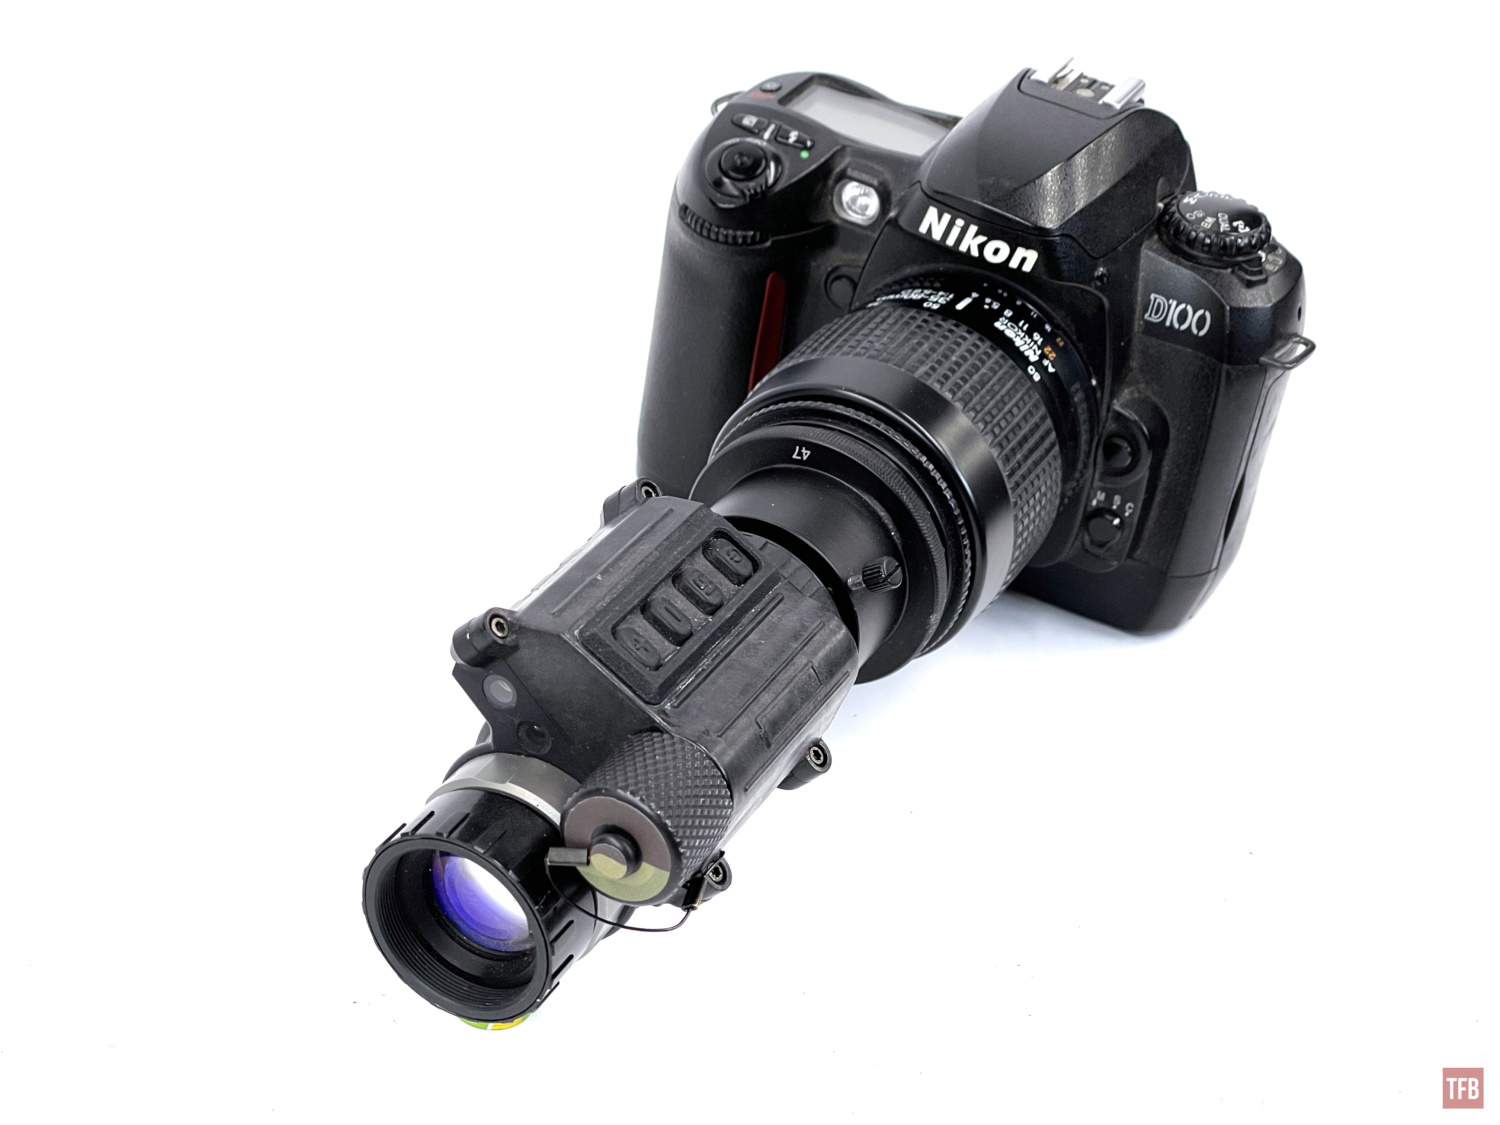 Nikon adapter to photograph night vision